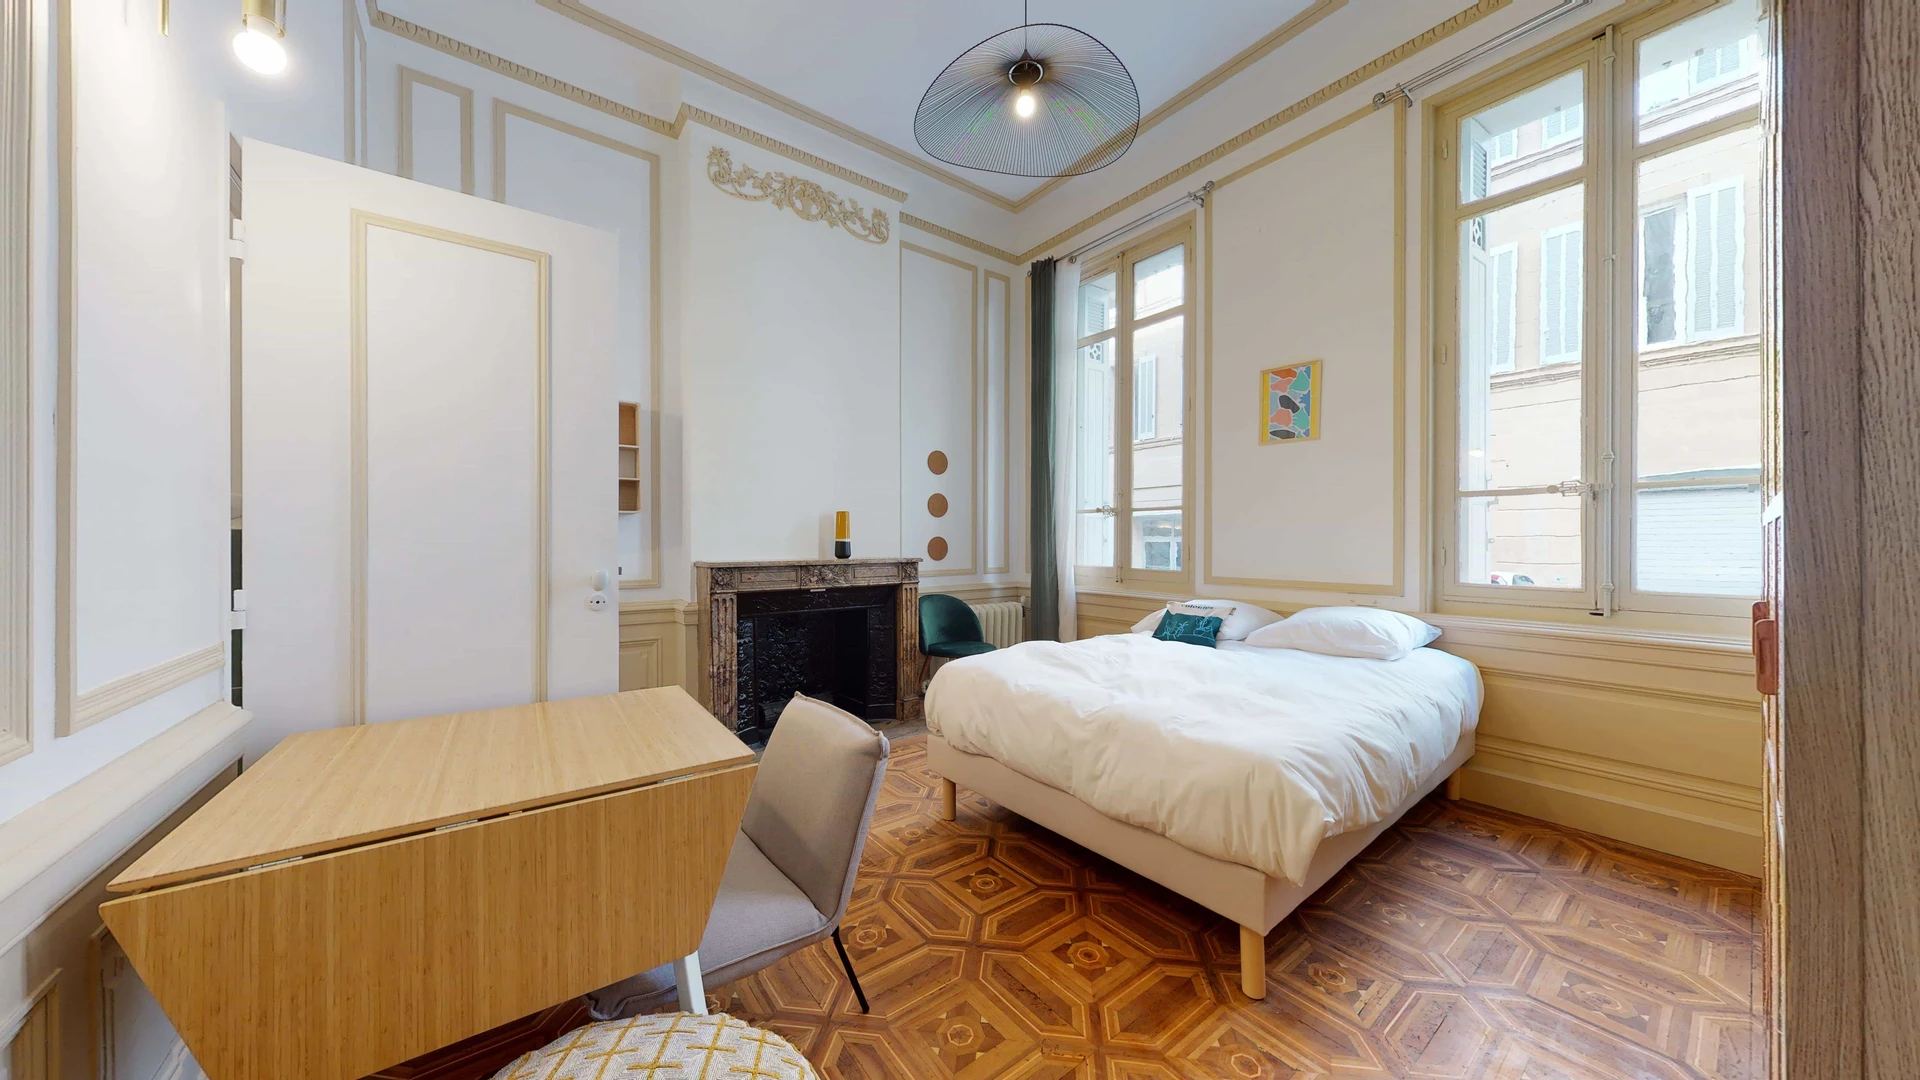 Alquiler de habitaciones por meses en Marsella